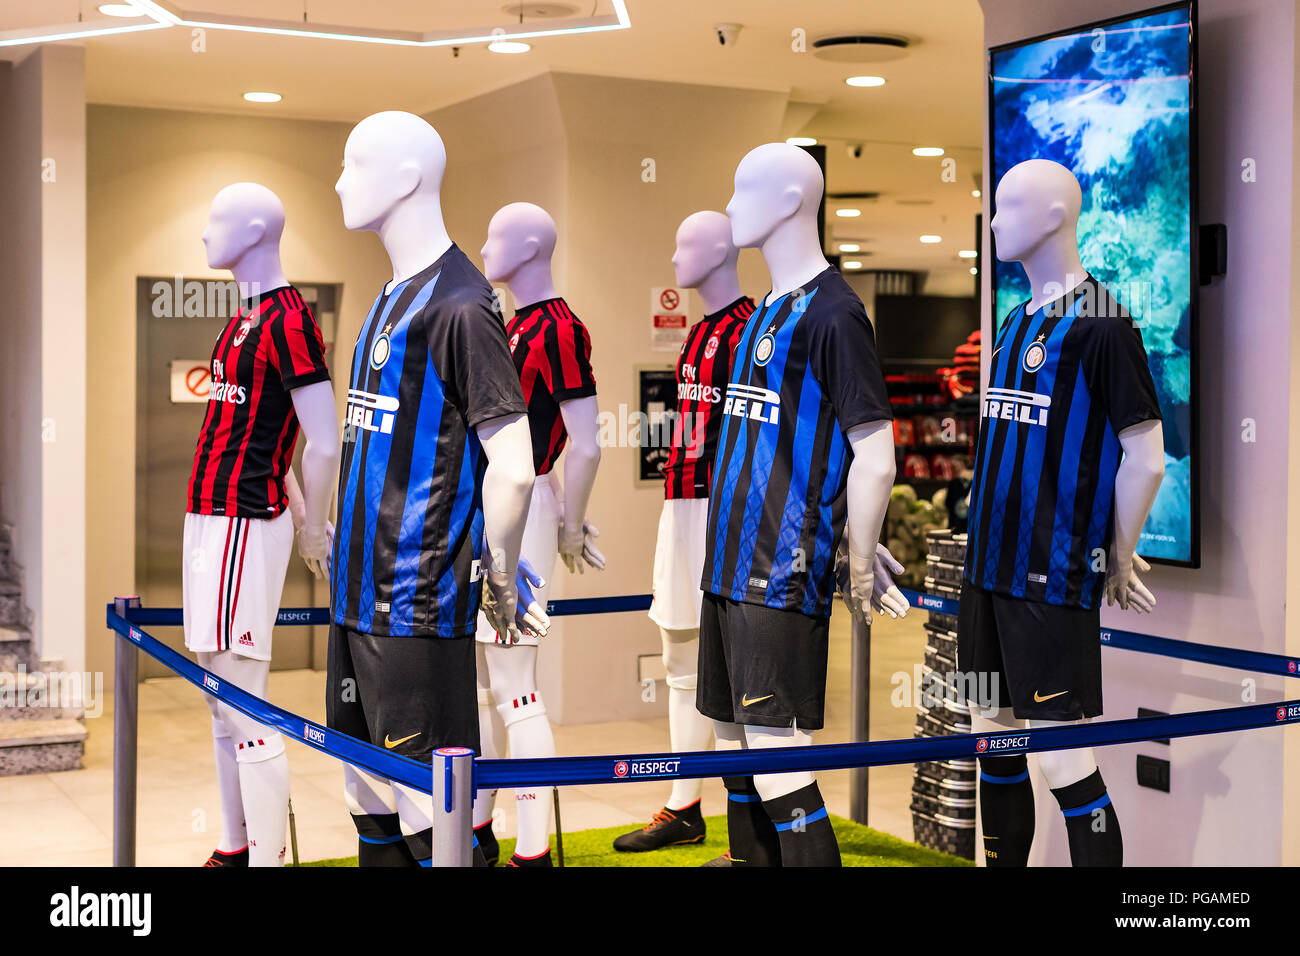 7 giugno 2018, Milano, Italia: Store ufficiale FC Inter e Milan ,  abbigliamento e calzature team di souvenirs e oggettistica per i tifosi  della squadra un Foto stock - Alamy